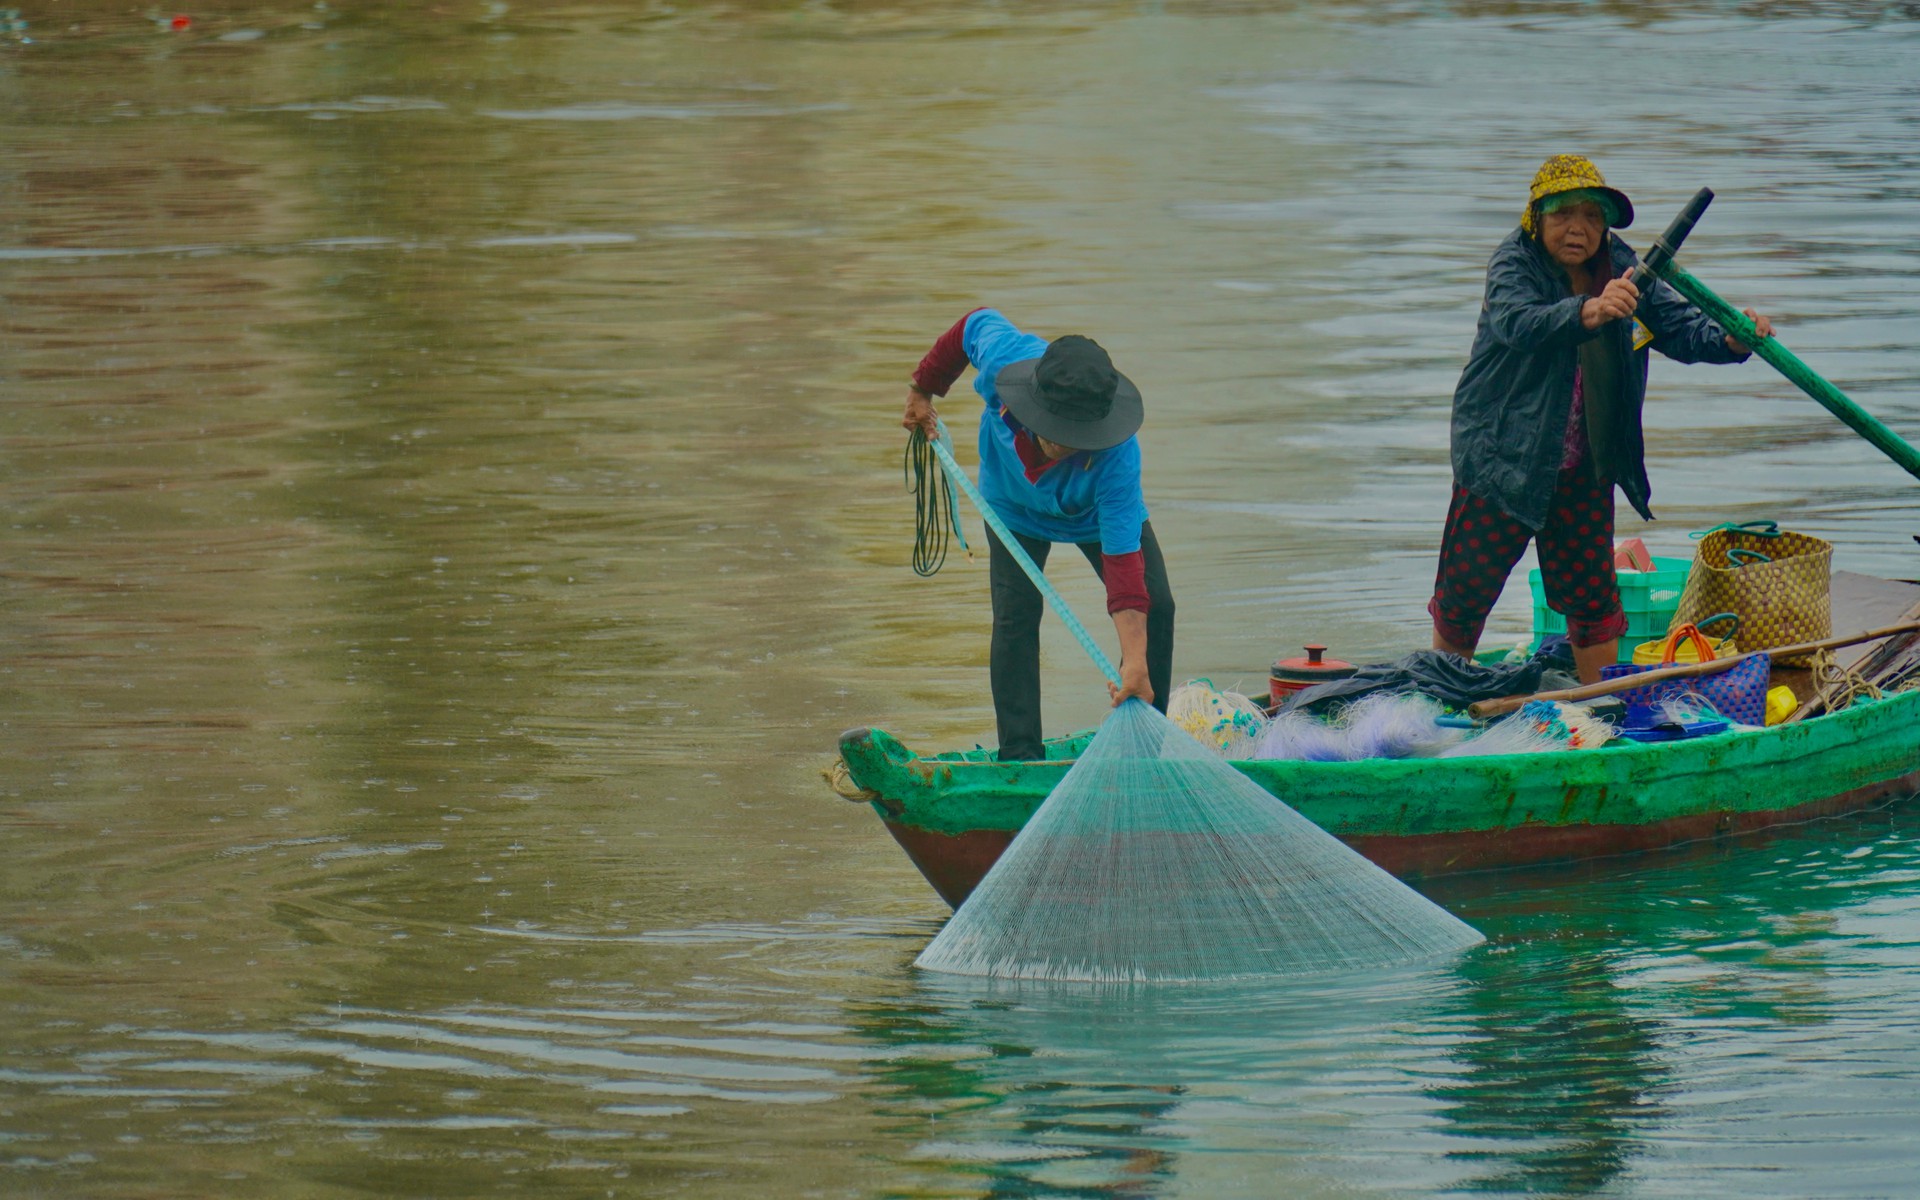 Một dòng sông nổi tiếng dài 76km qua thành phố Phan Phiết của Bình Thuận, có 2 vợ chồng hơn 20 năm đánh cá